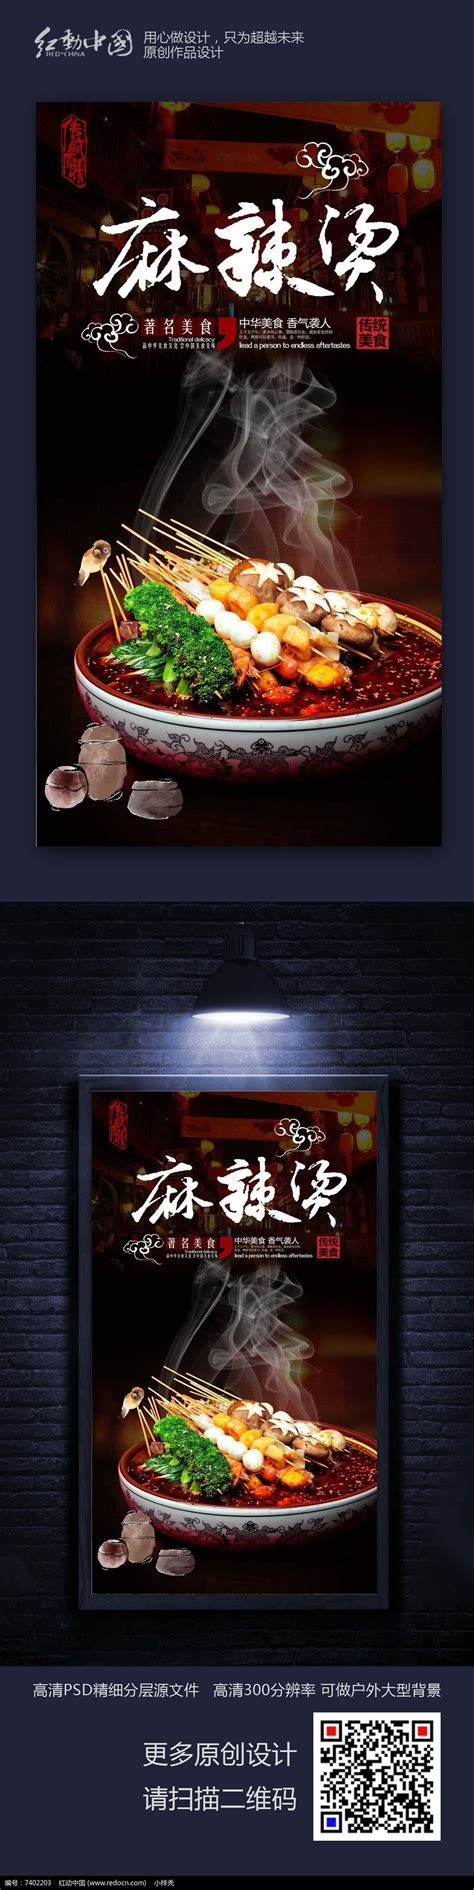 创意麻辣烫美食宣传海报设计图片_海报_编号7760805_红动中国